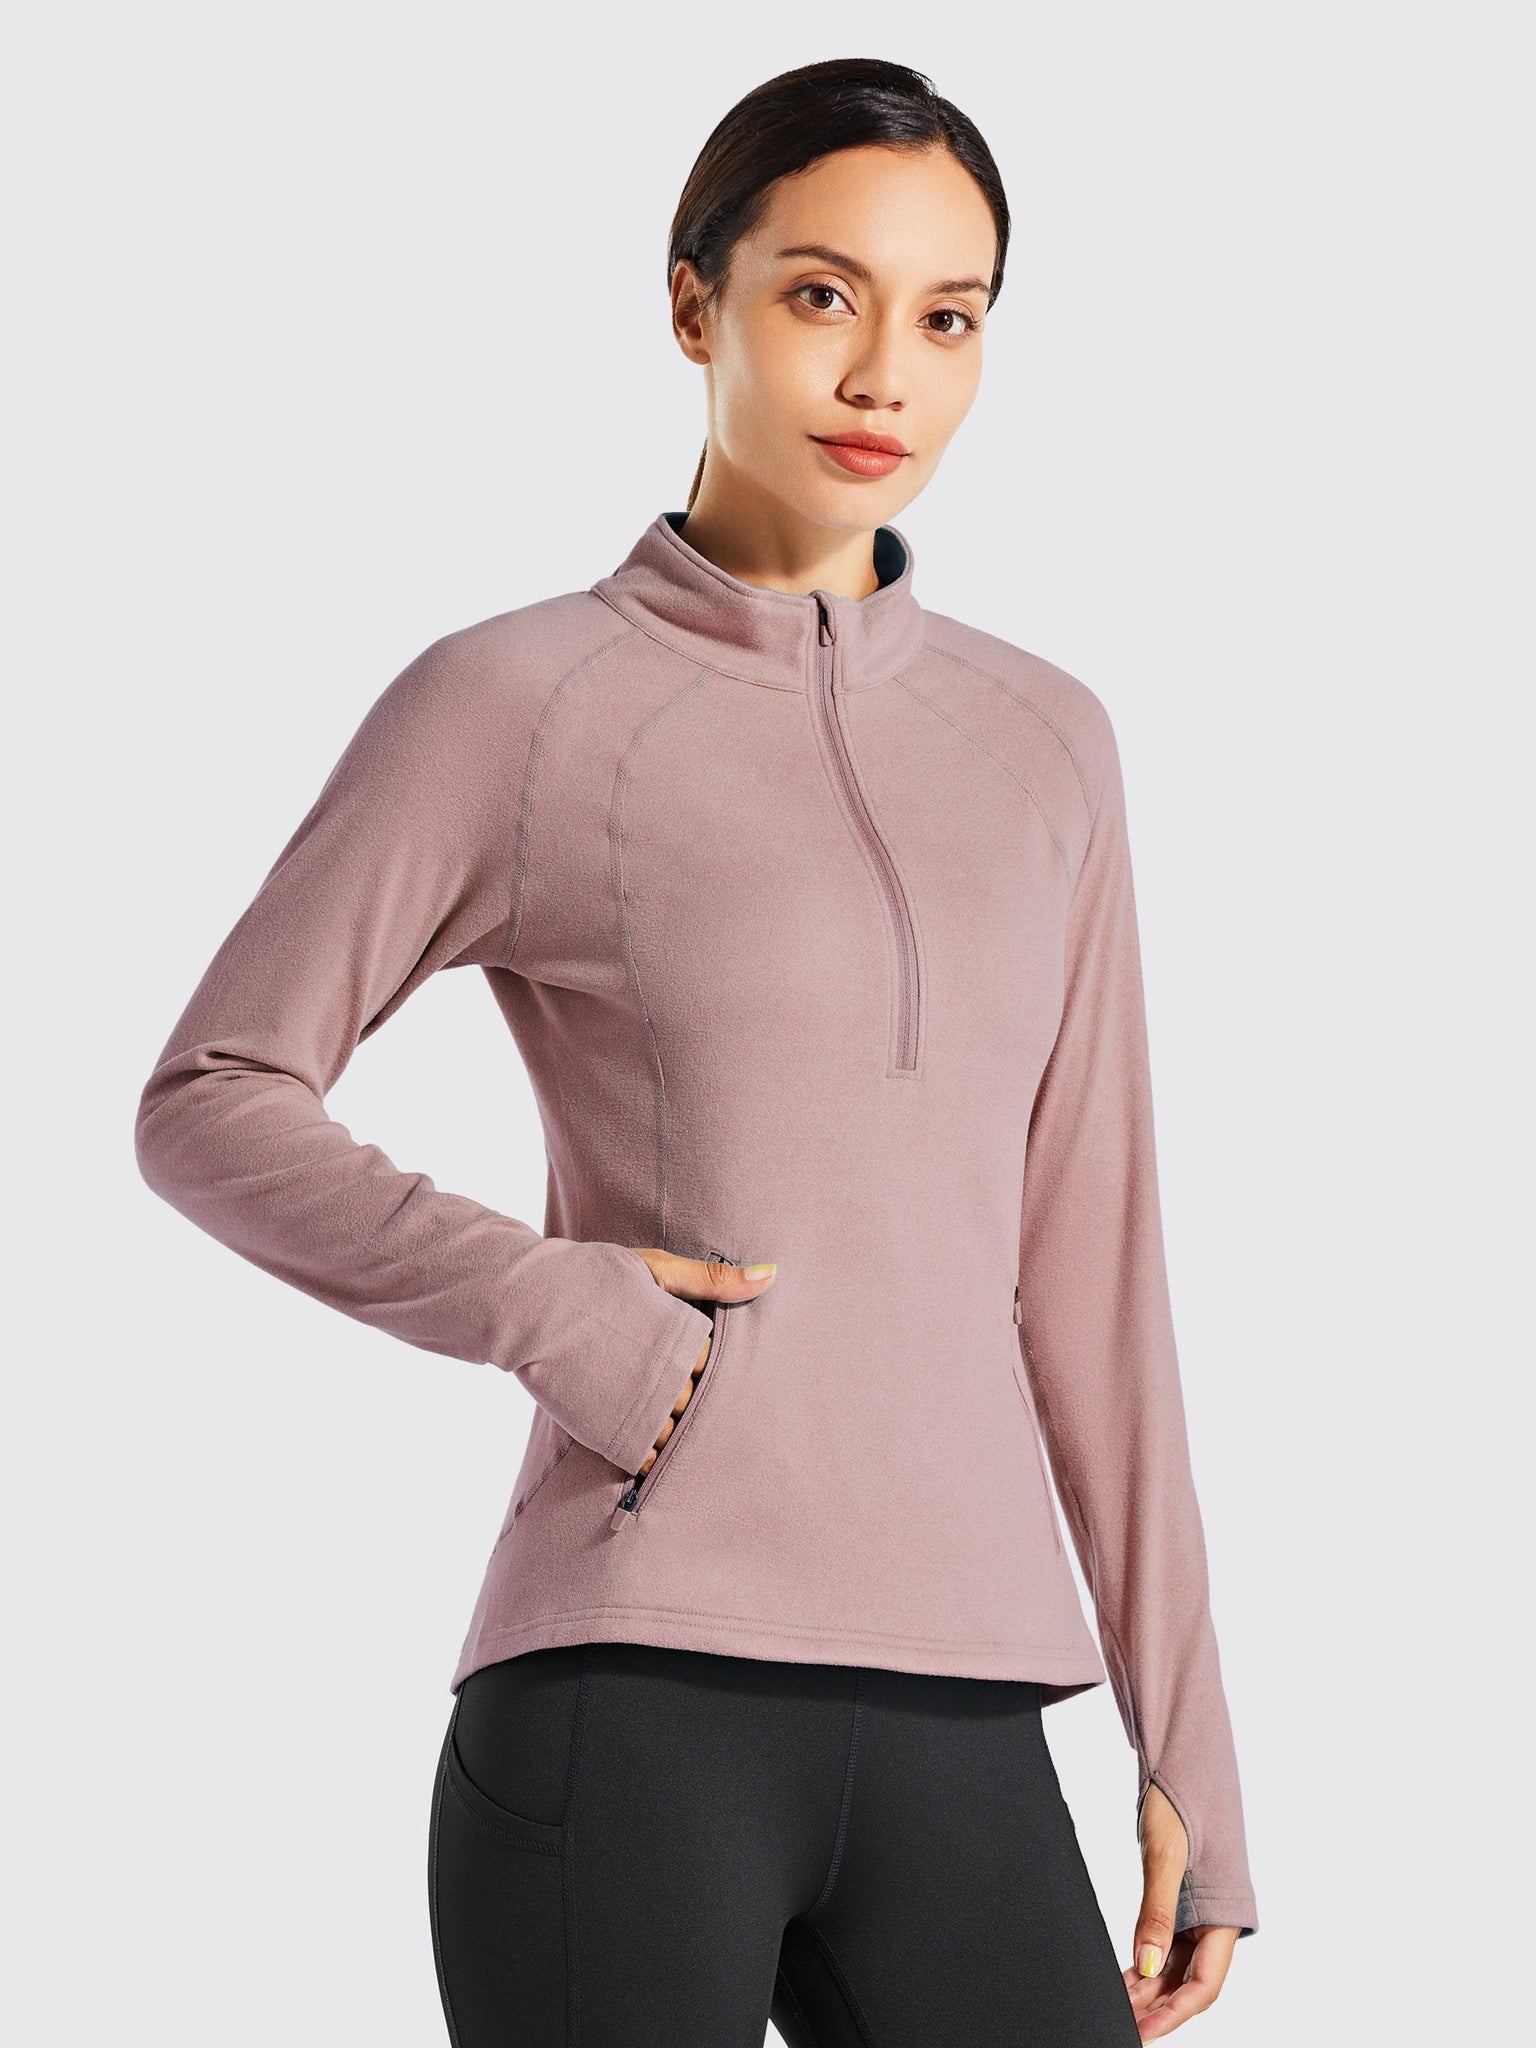 Willit Women's Fleece Pullover Half Zip_PinkGray1